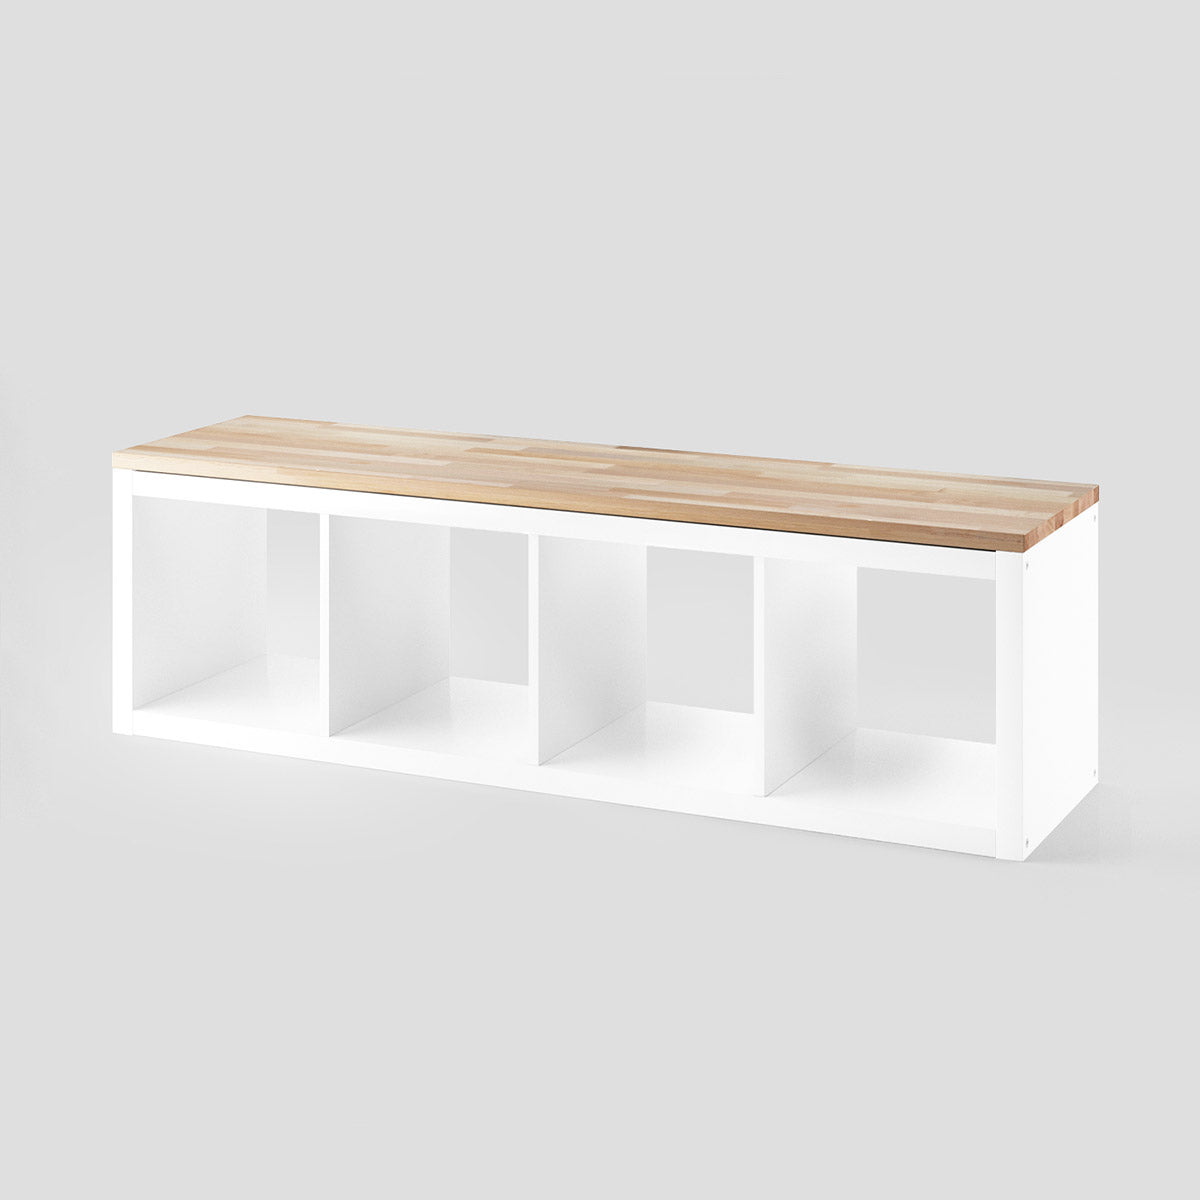 4-faches Kallax Sideboard mit einer Deckplatte aus Holz. Das Kallax Regal ist horizontal aufgestellt.